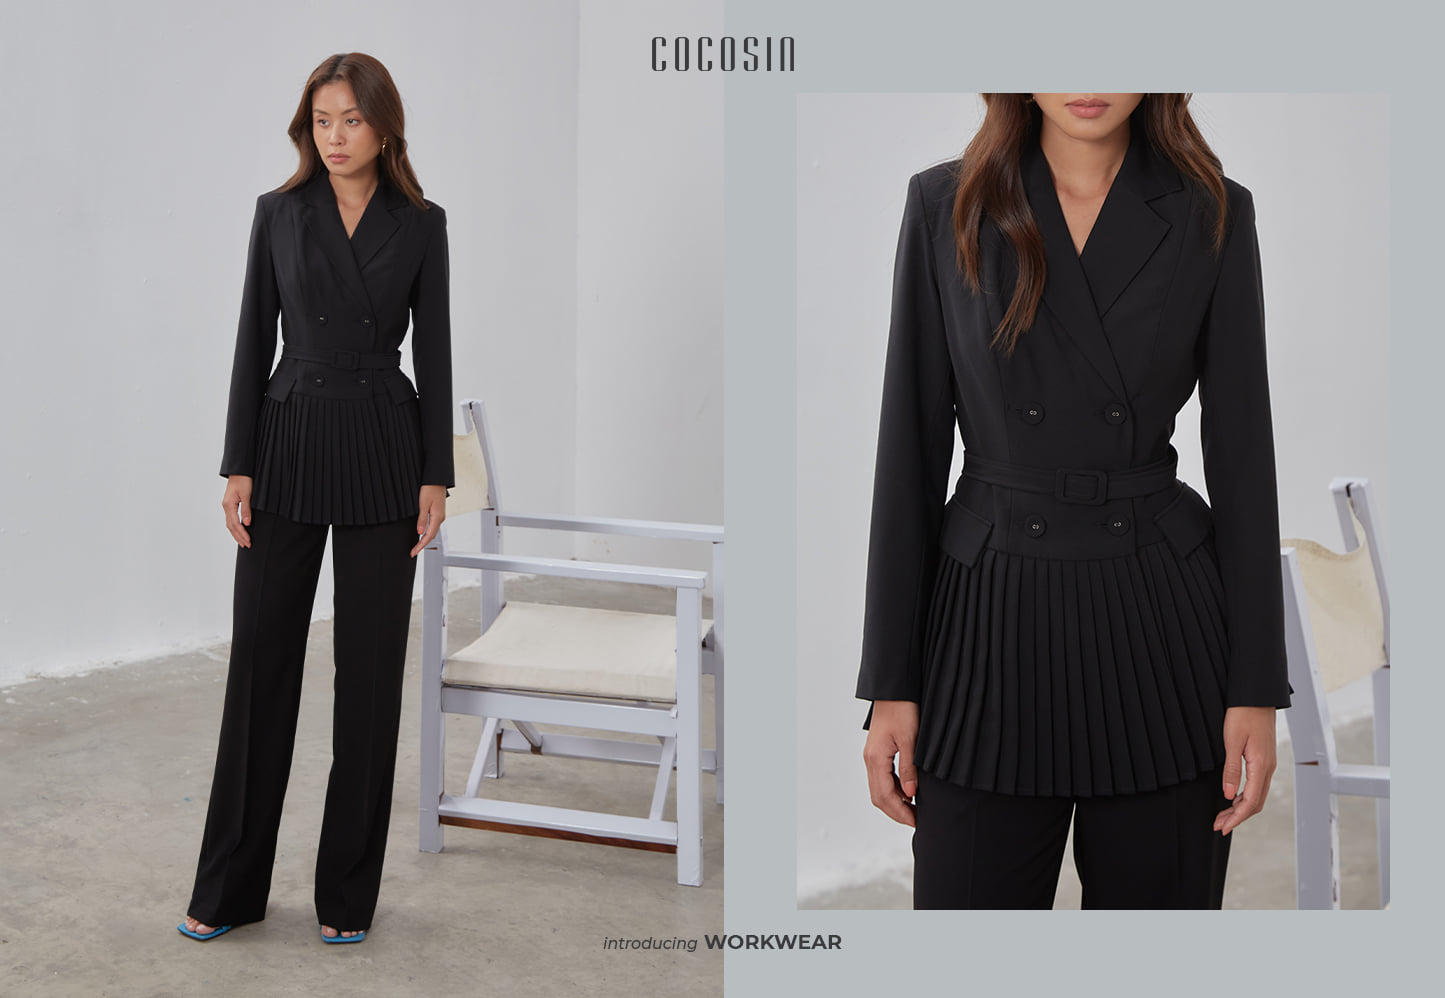 Lựa chọn một set đồ của Cocosin gồm áo blazer giá 850.000 đồng và quần ống rộng 650.000 đồng, Khánh Thy toát lên khí chất của một người phụ nữ hiện đại và thành đạt.